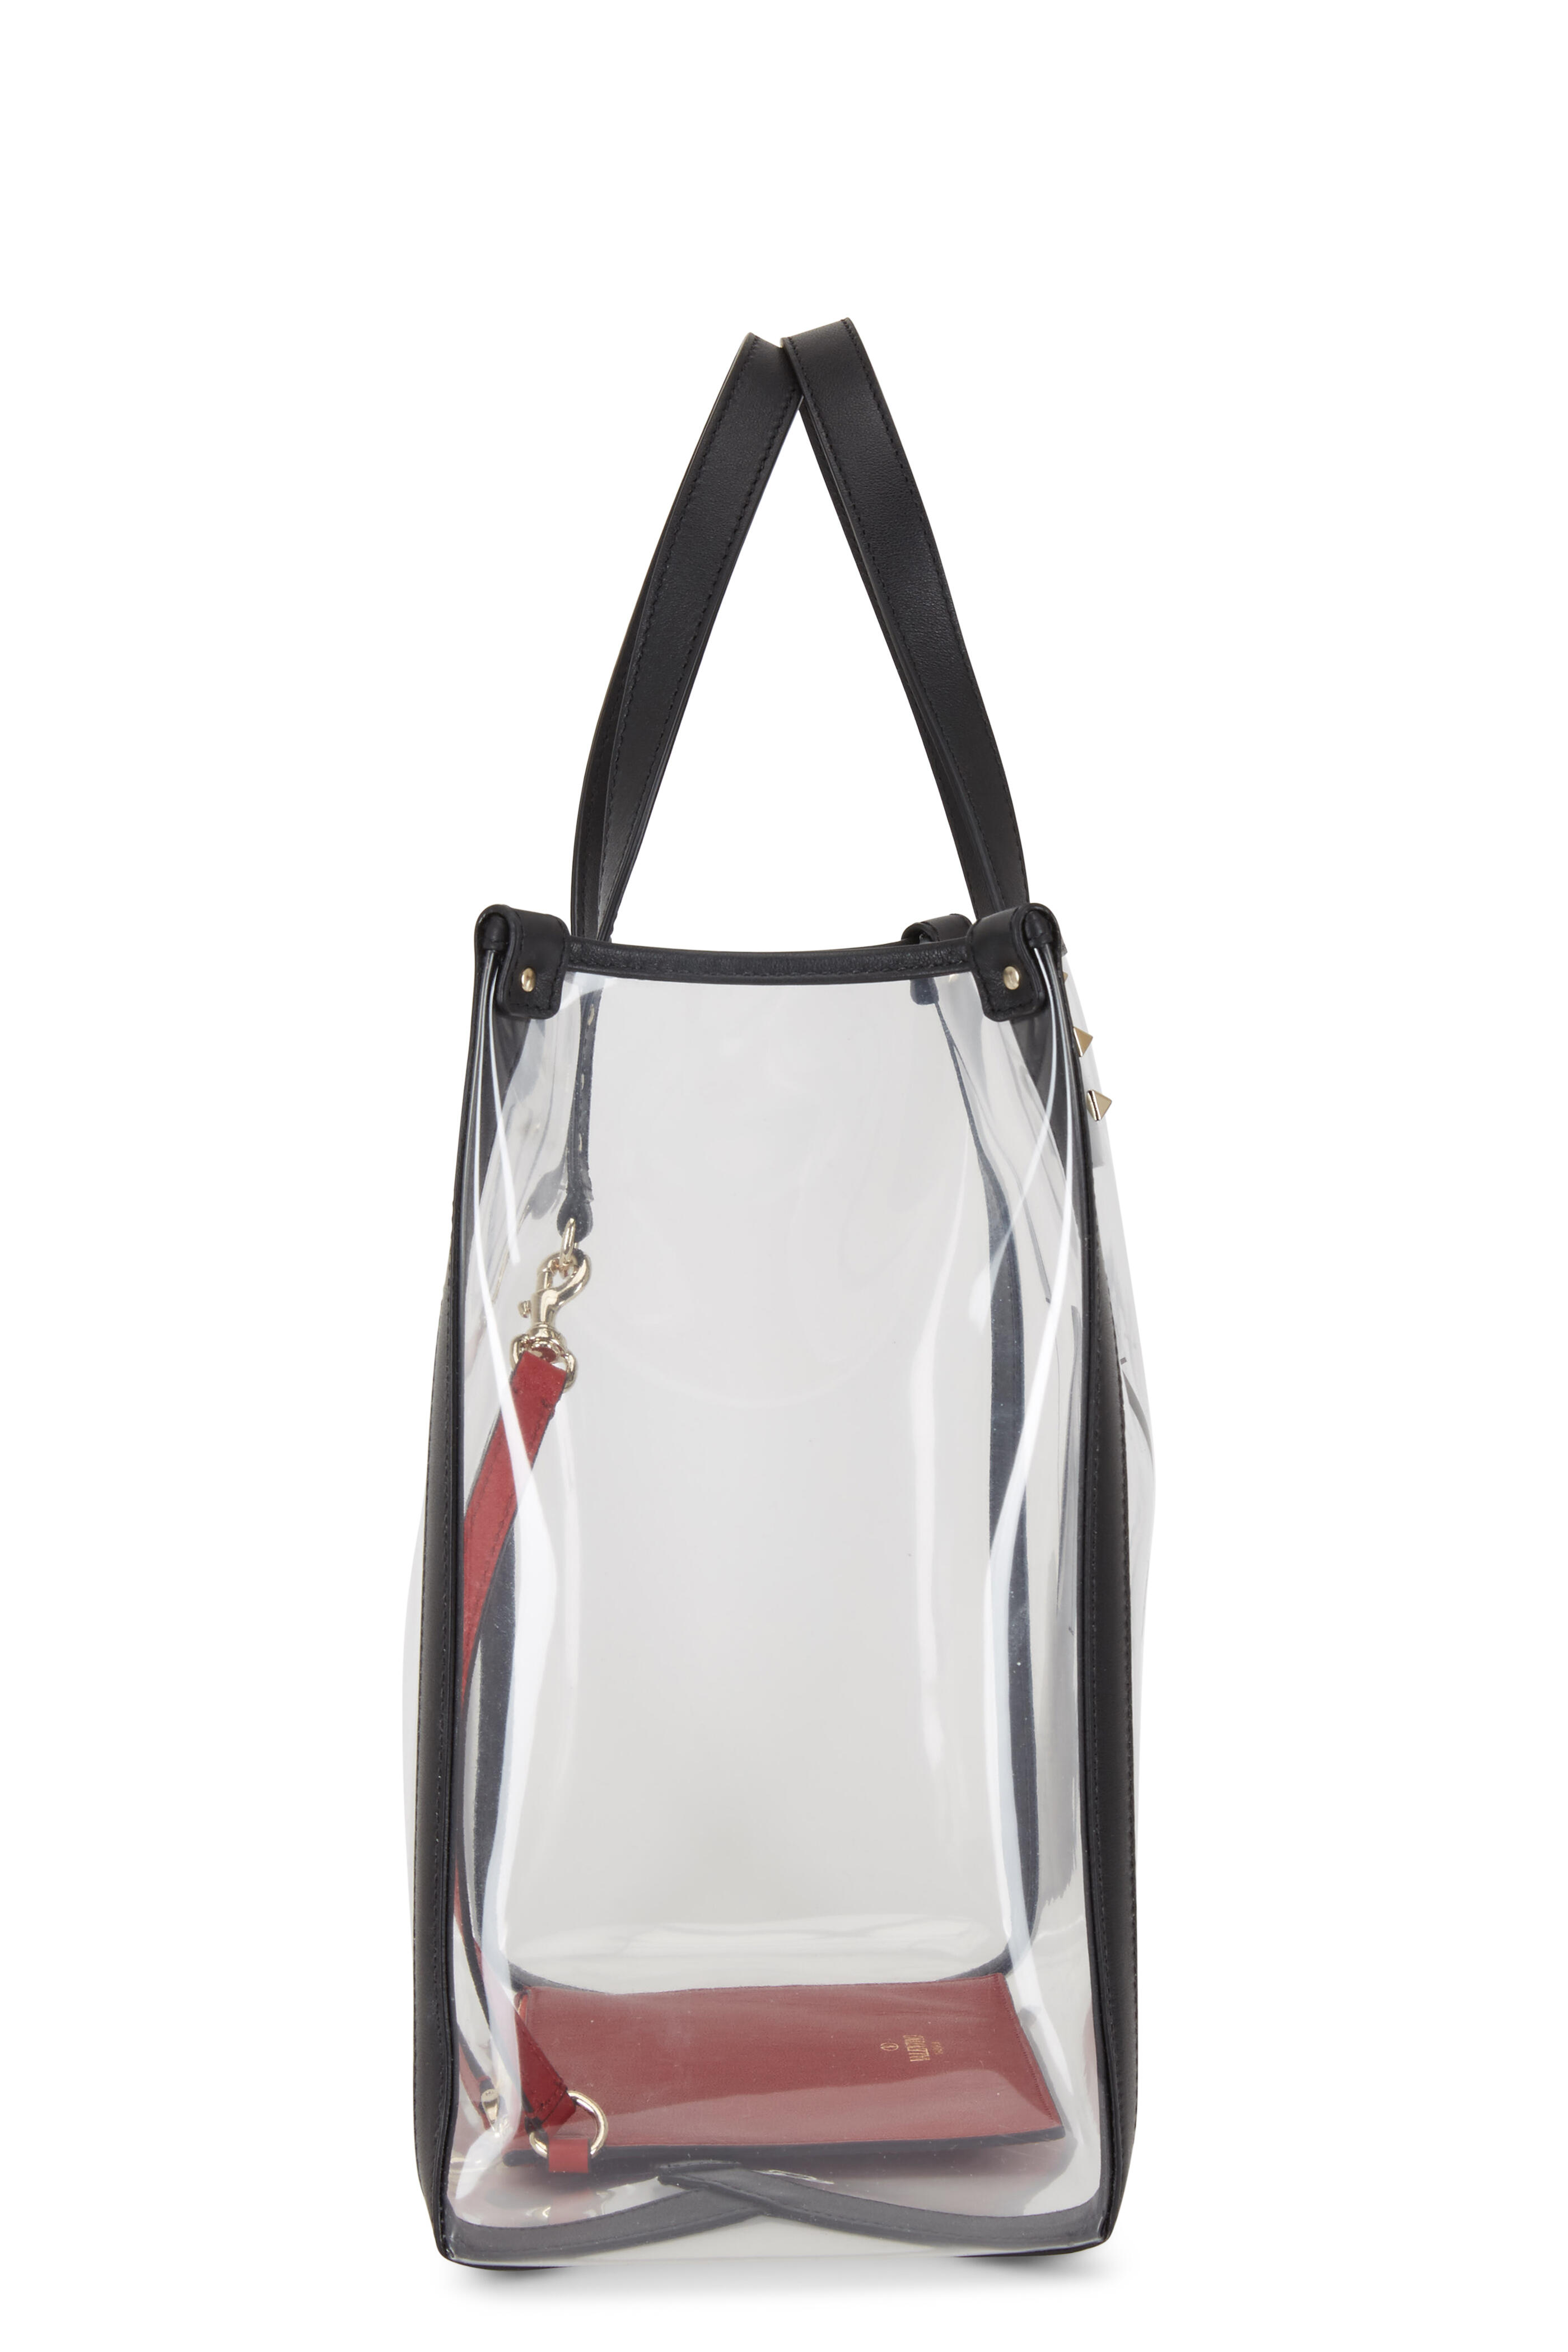 Fashion Men Women's Transparent Shoulder Bag PVC Clear Tote Bag